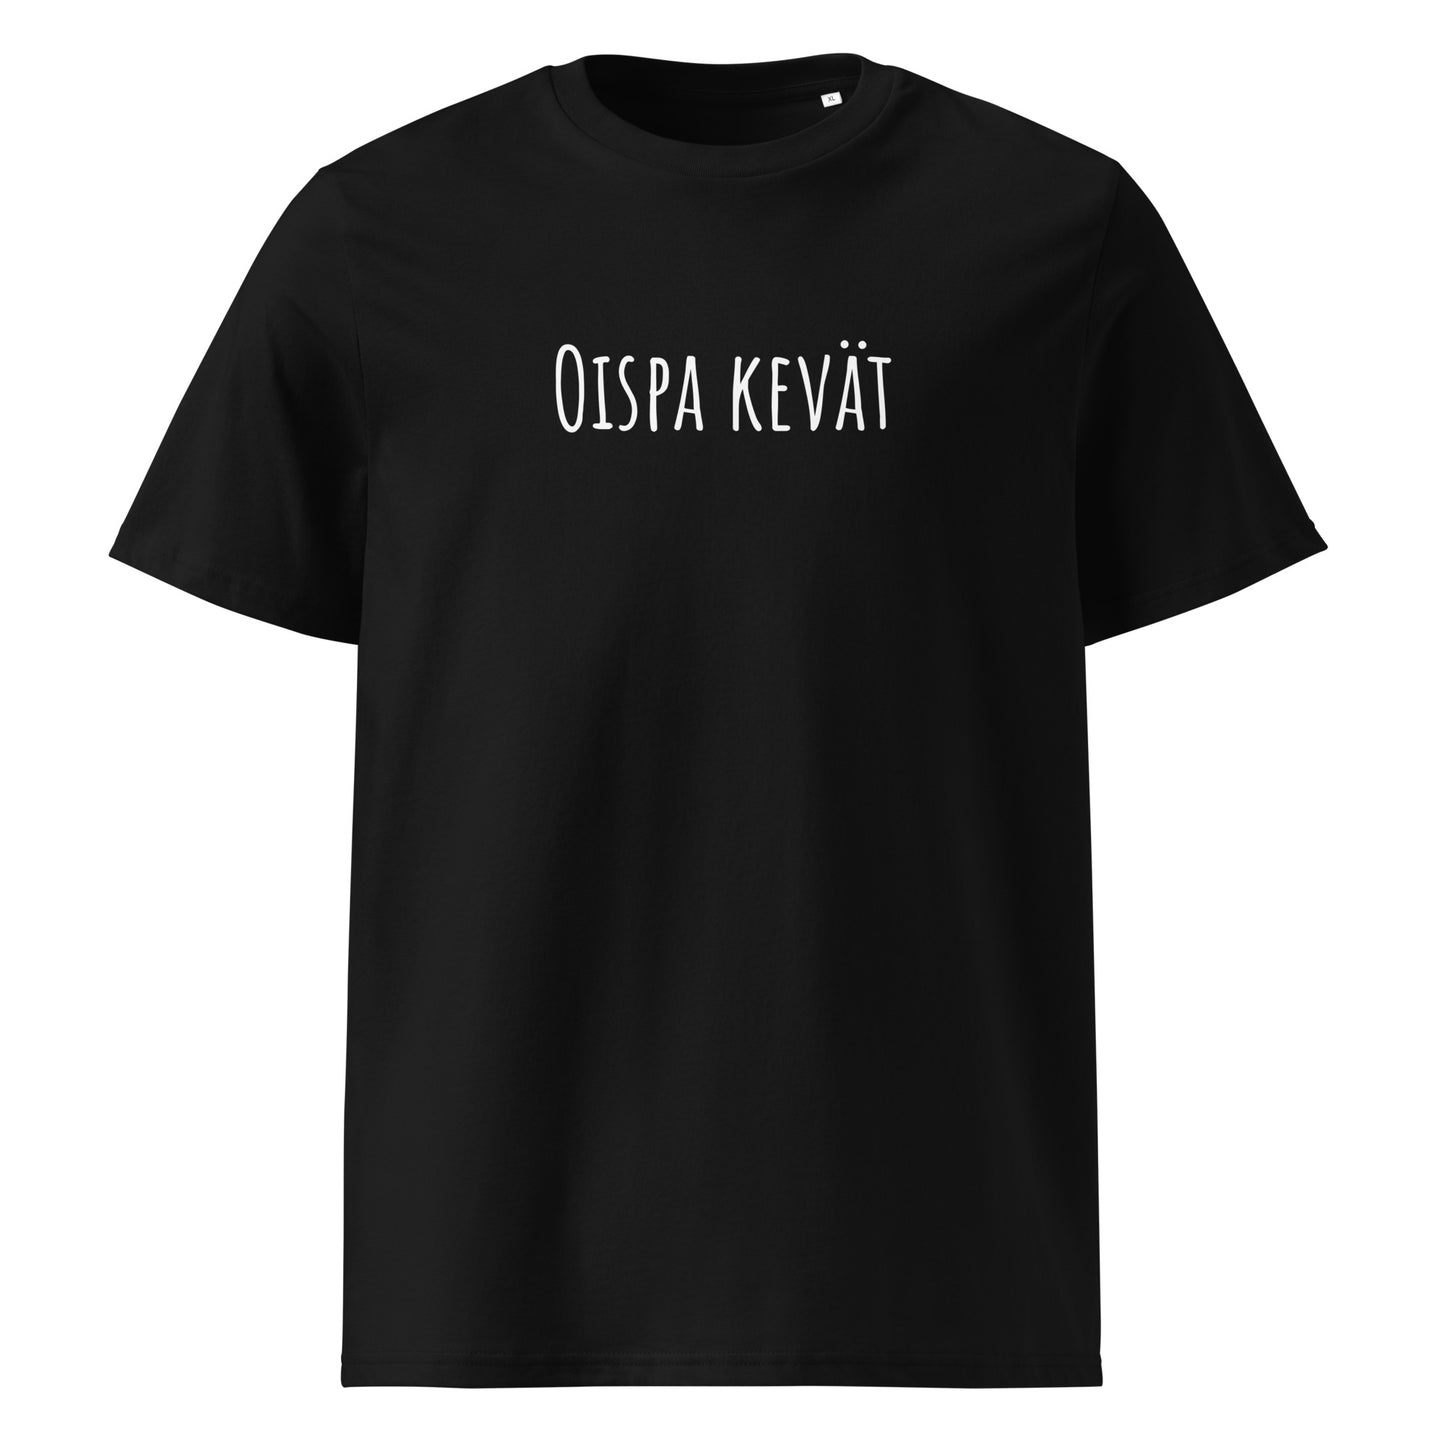 Oispa kevät - Unisex organic cotton t-shirt